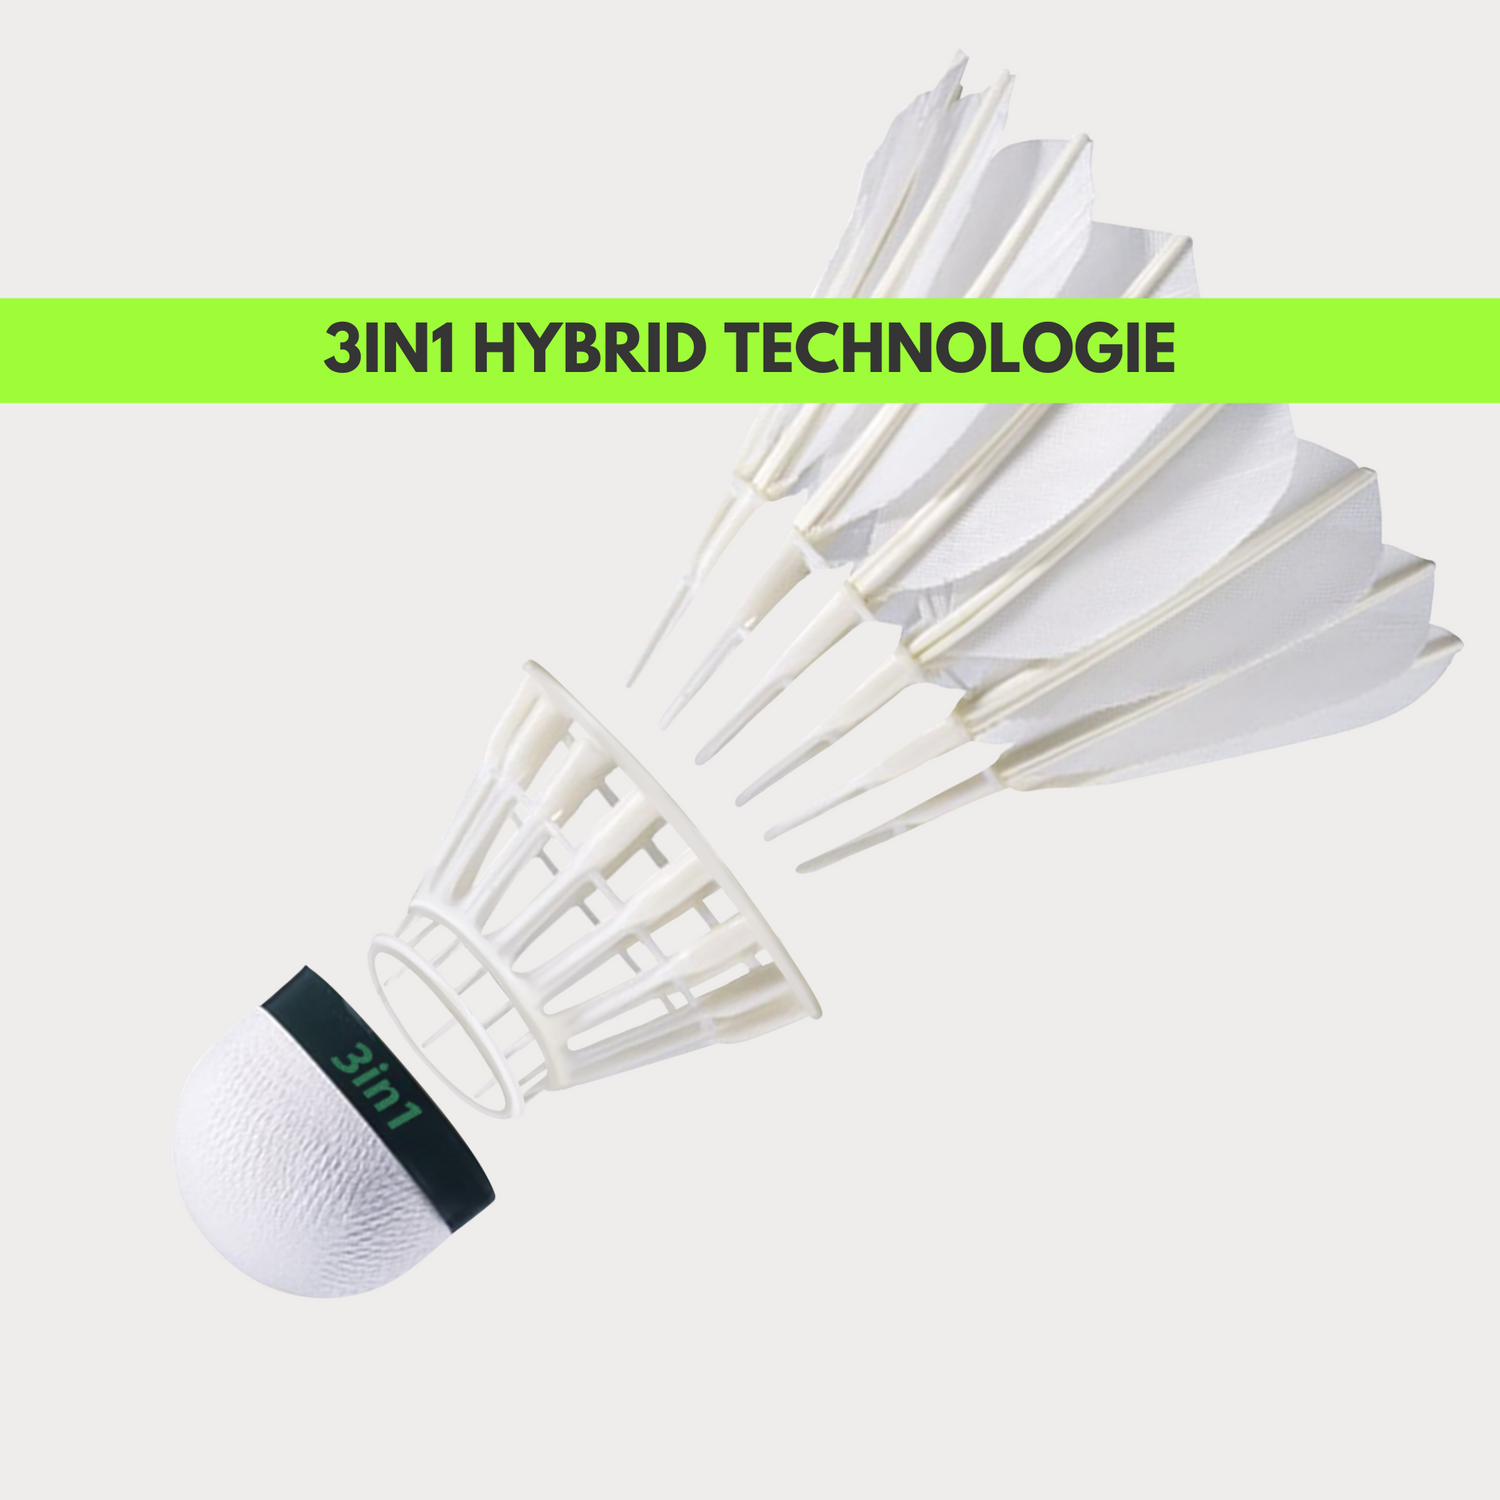 3in1 Hybrid System